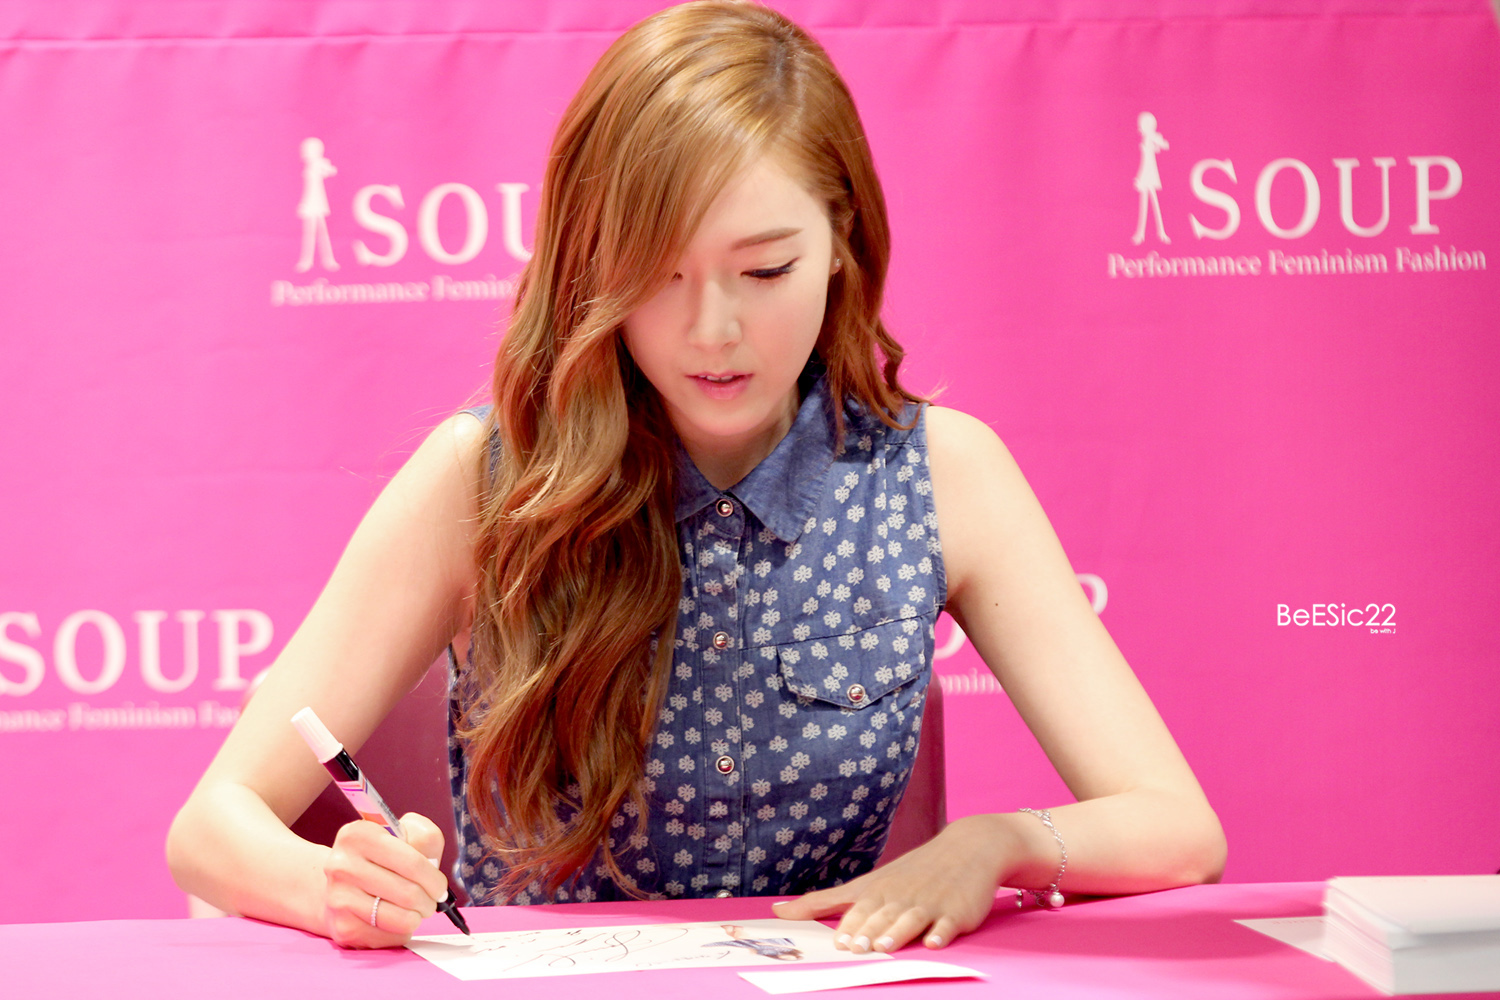 [PIC][14-06-2014]Jessica tham dự buổi fansign lần 2 cho thương hiệu "SOUP" vào trưa nay - Page 2 226DFD4353DB9DED2D4920